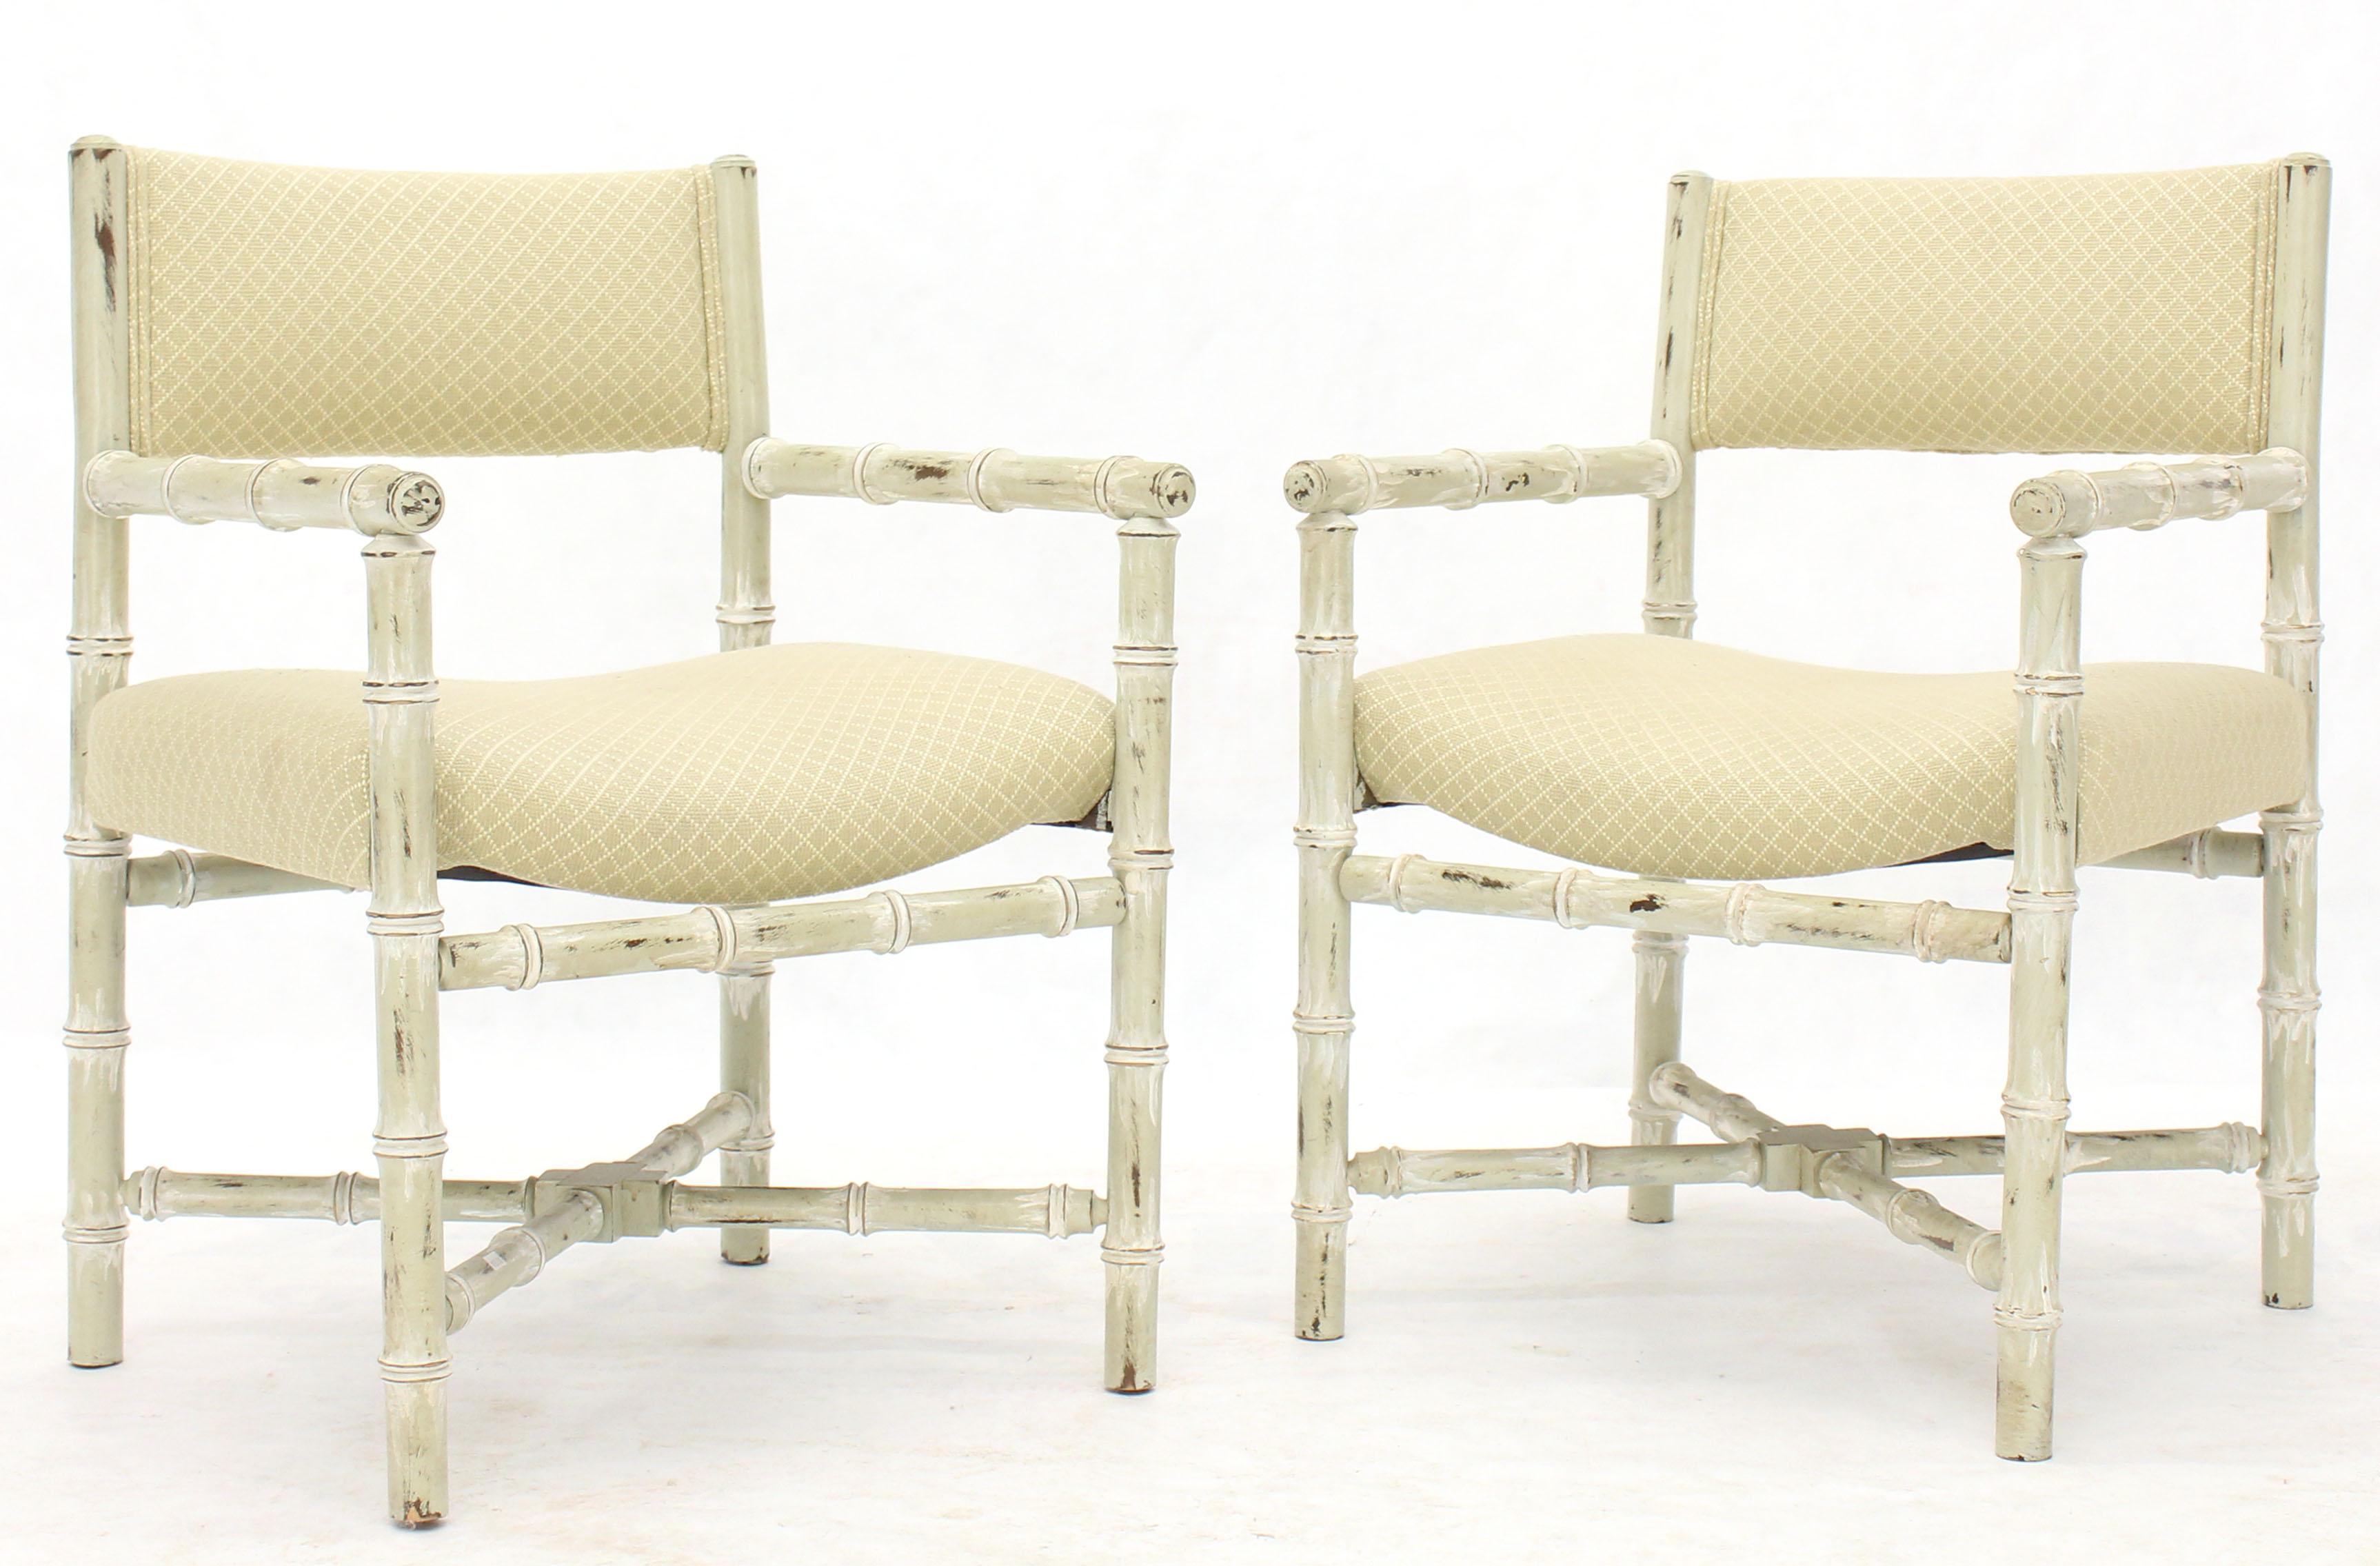 Paar solide Mid-Century Modern Lounge Capitan Stühle in Distressed White Finish und X Basen. Baker- oder Drexel-Stil und Qualitätsstücke.
 